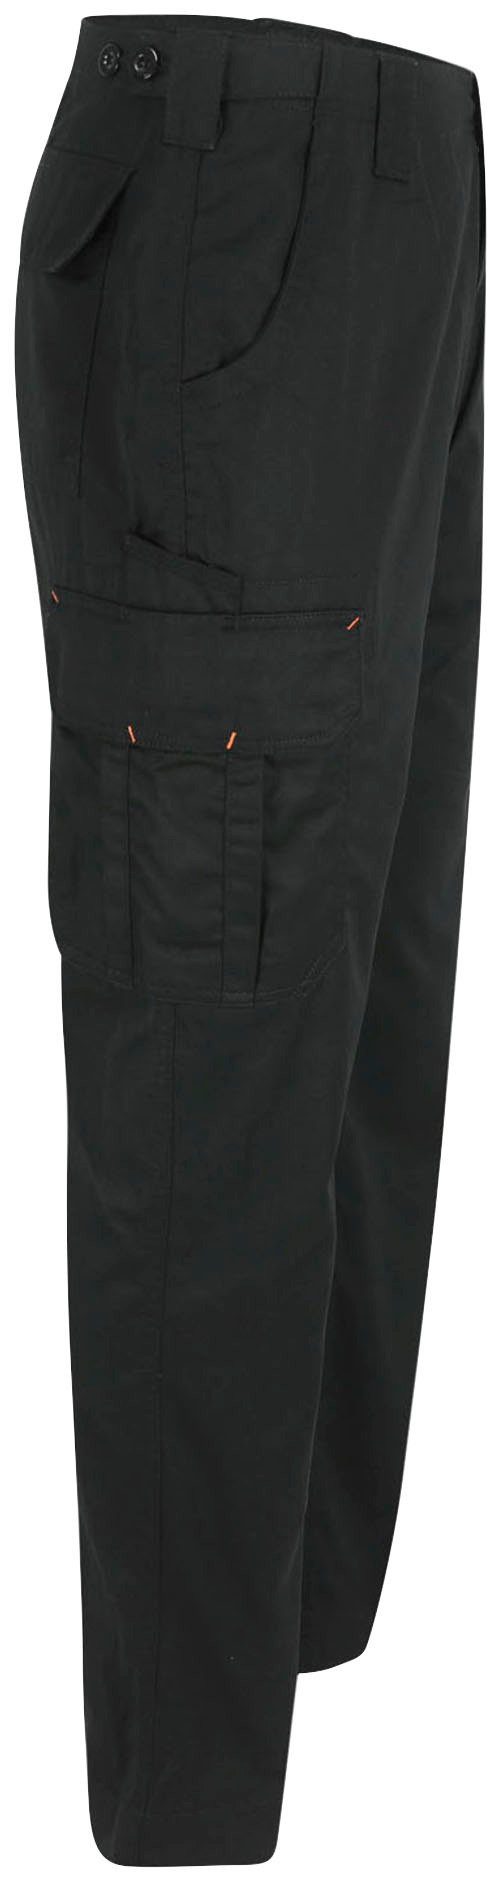 Taschen, 7 Herock Farben Thor einstellbarer Hose Bund, Wasserabweisend, Arbeitshose leicht, schwarz viele